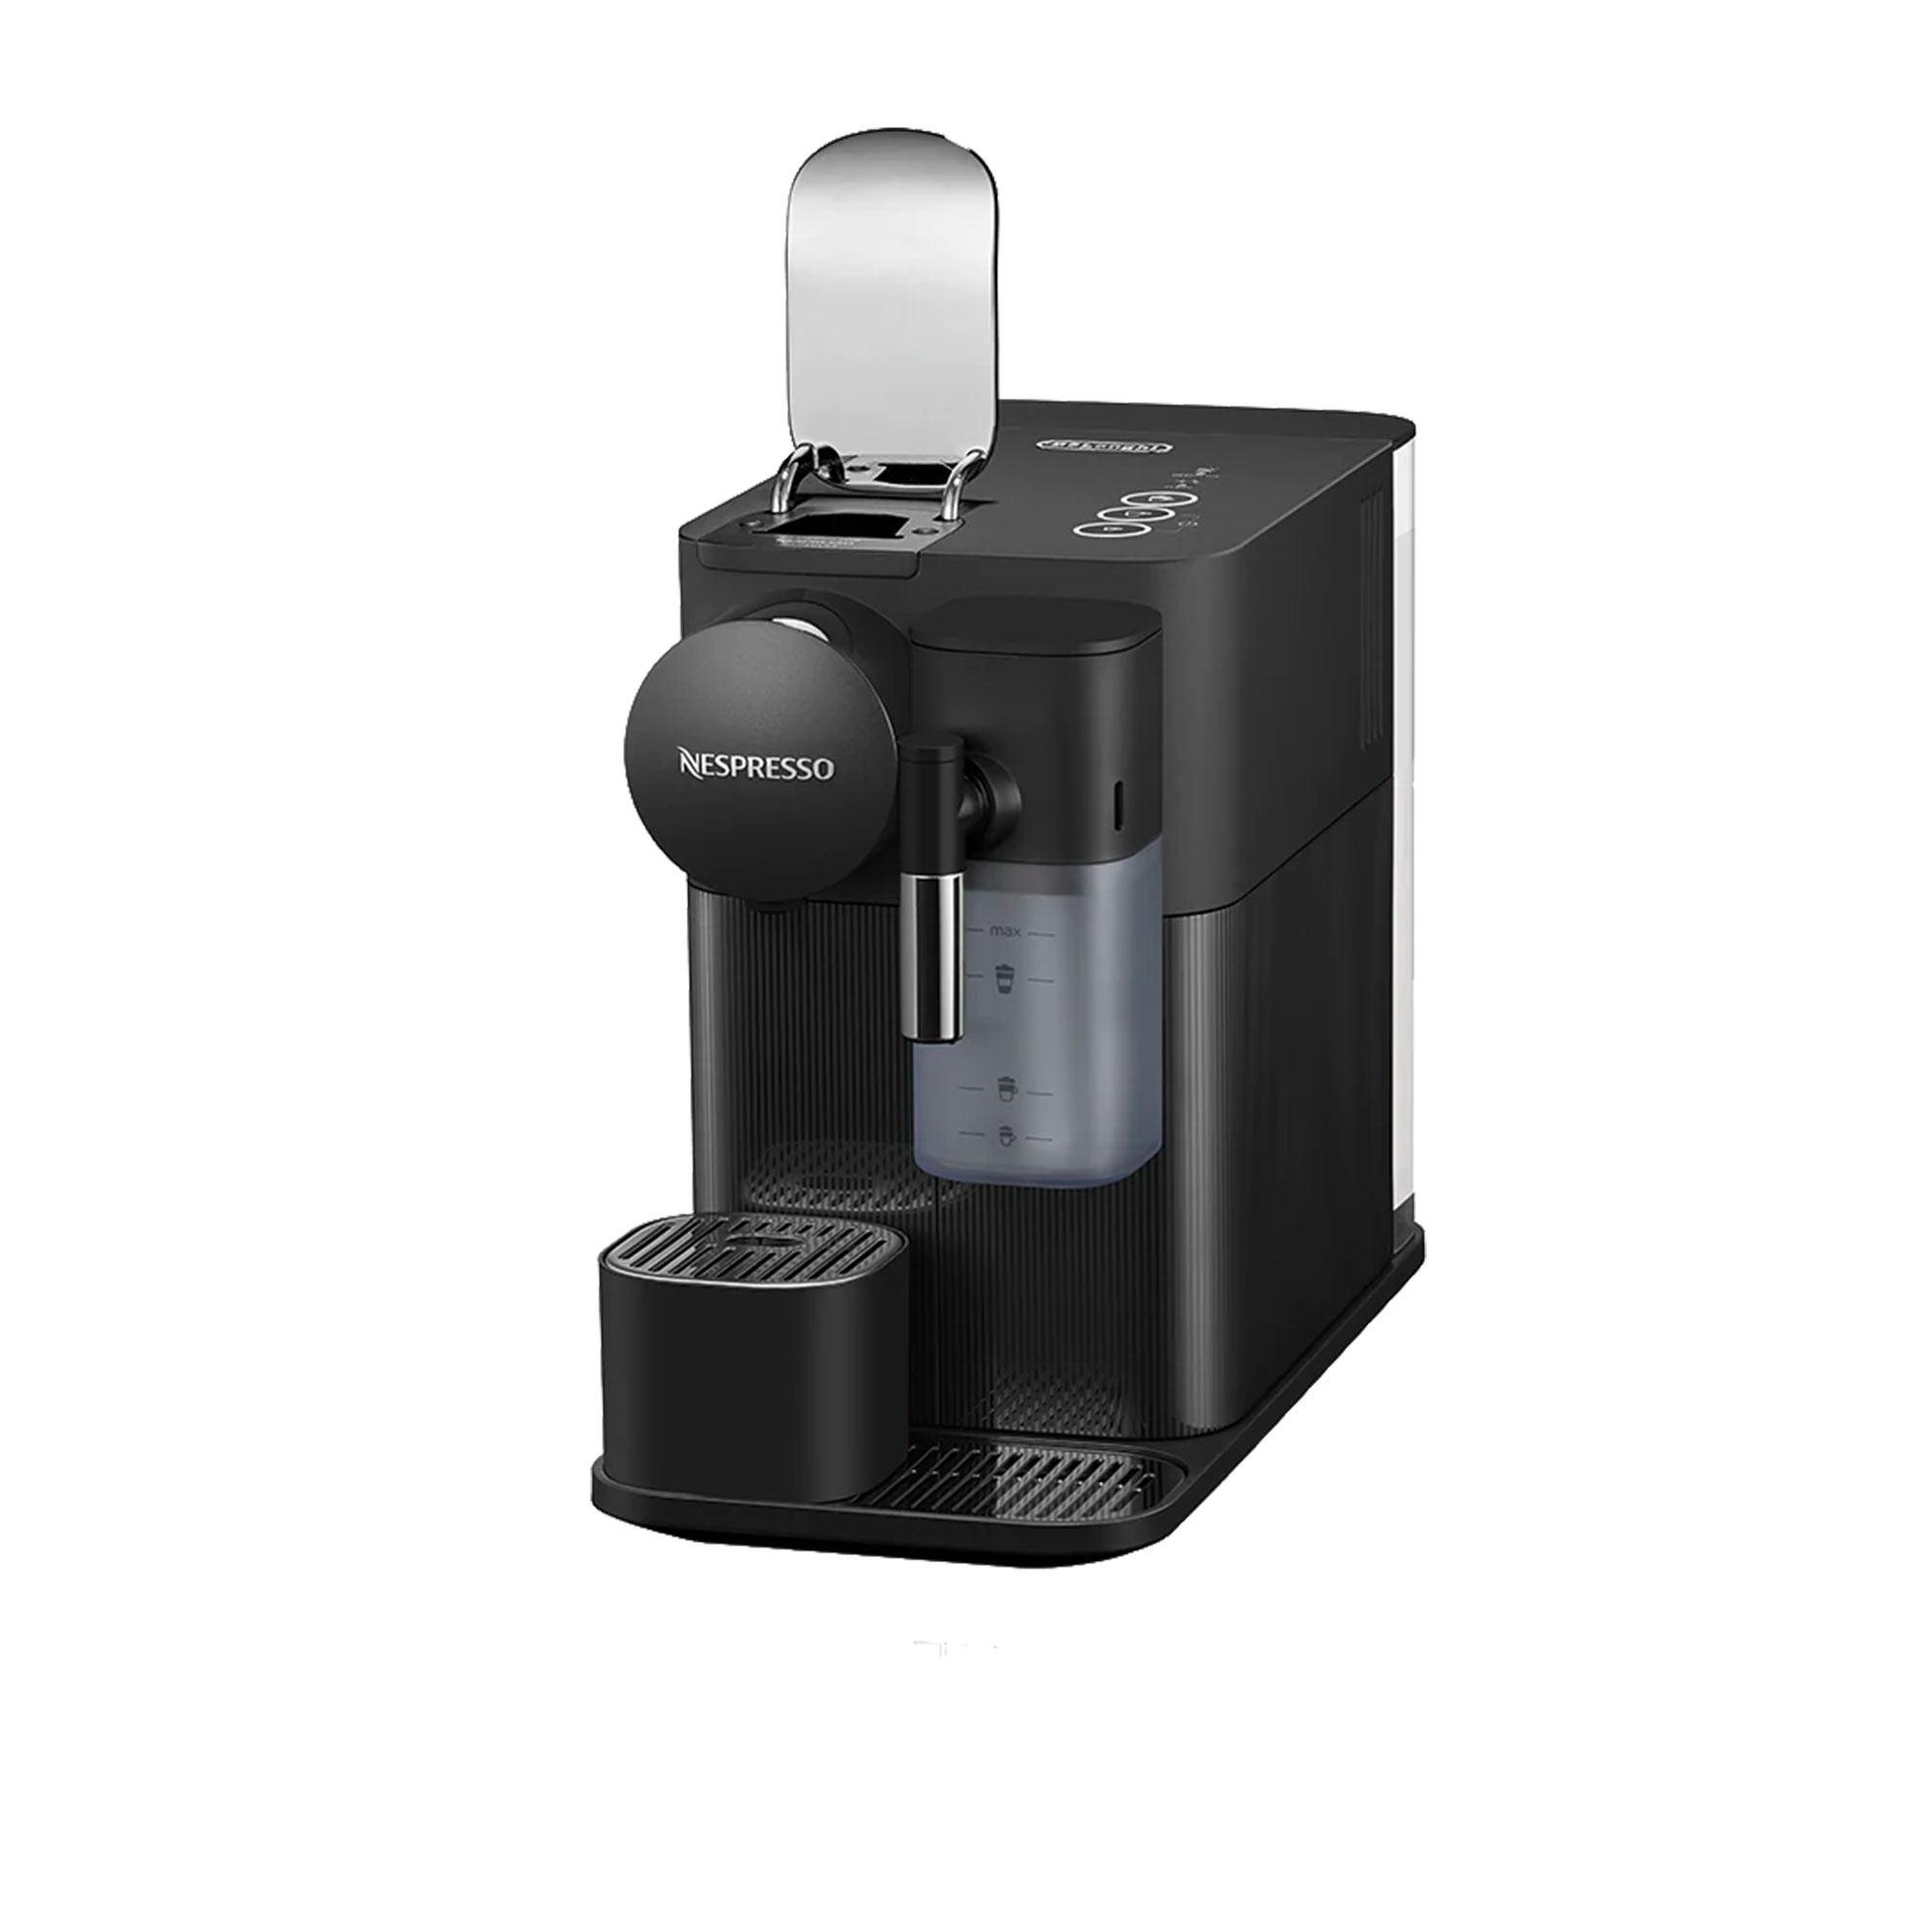 DeLonghi Nespresso Lattissima One EN510B Coffee Machine Black Image 4